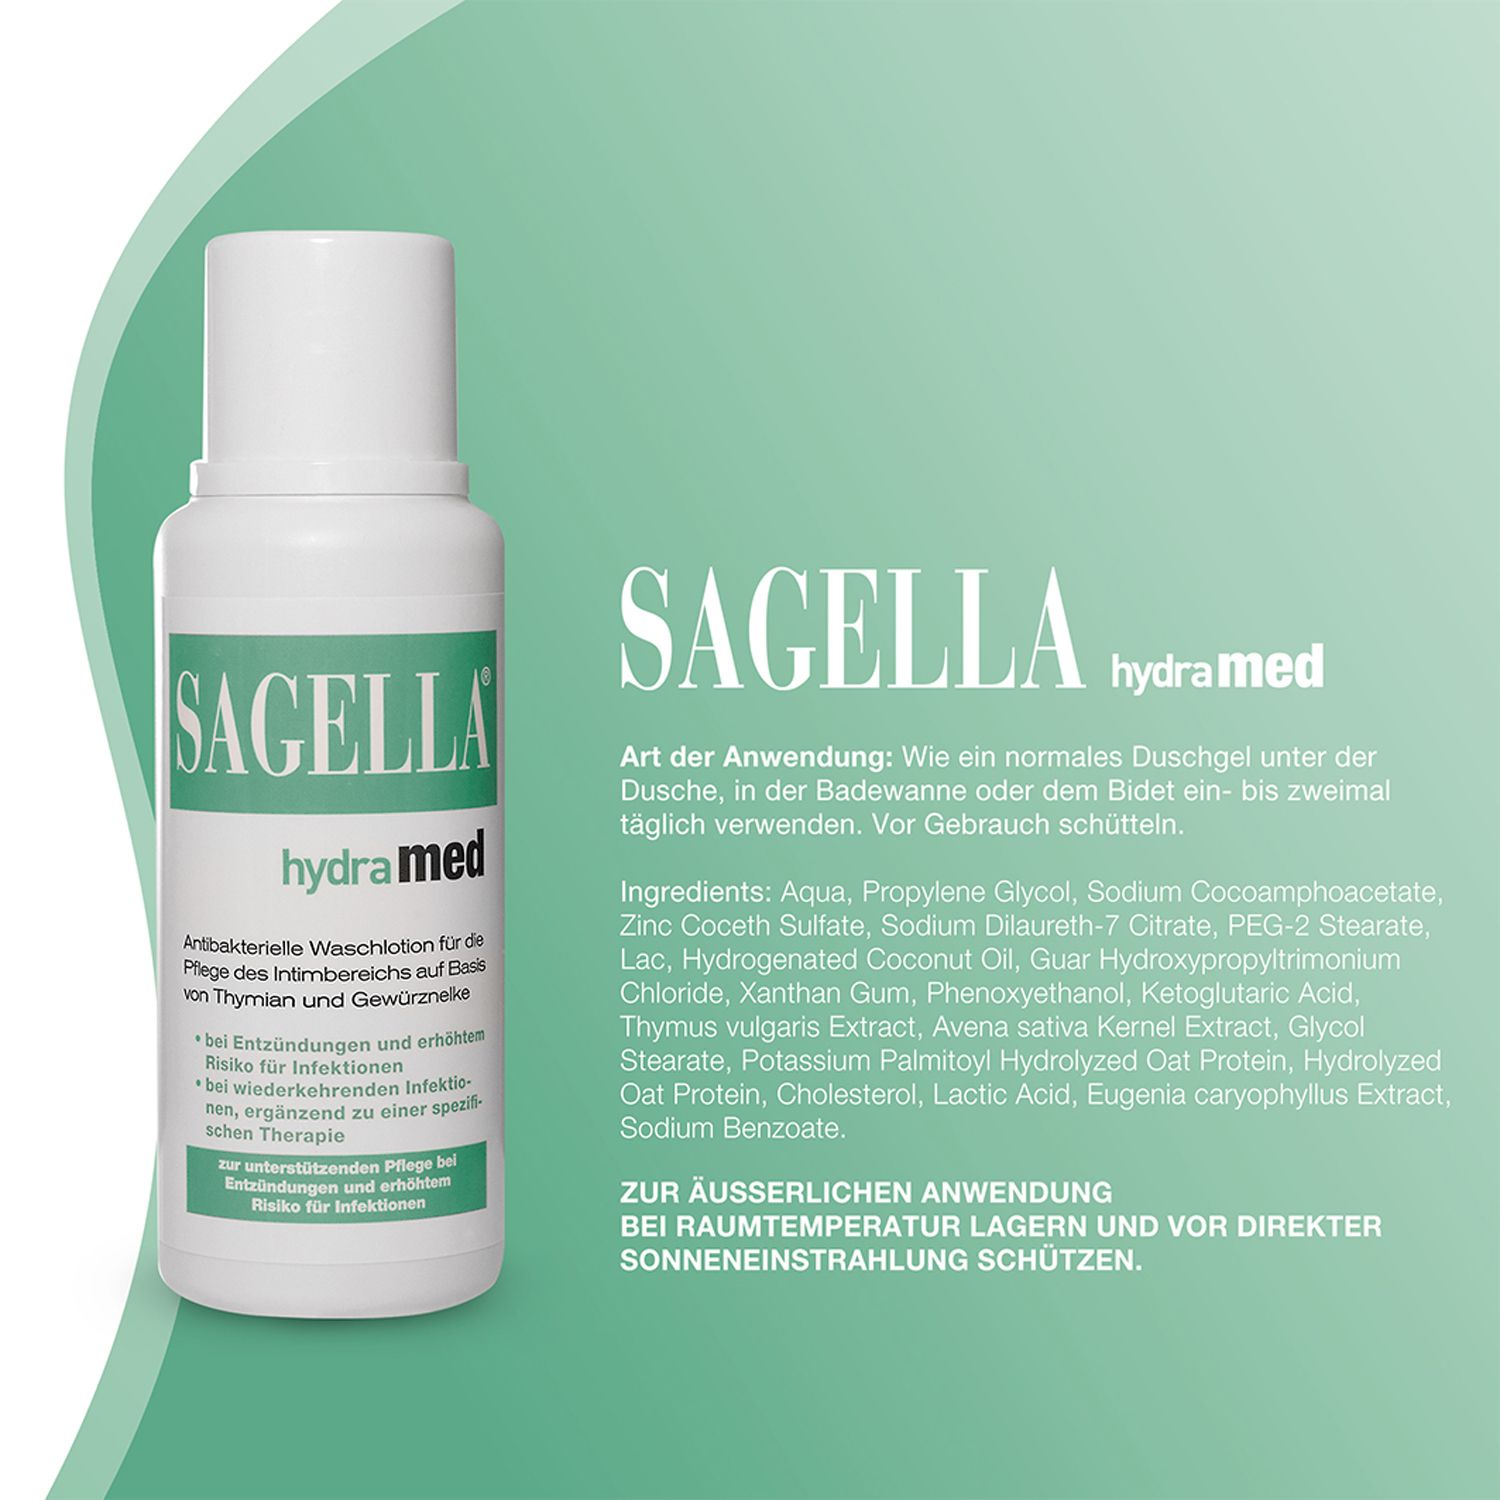 SAGELLA hydramed: Antibakterielle Waschlotion für den Intimbereich,